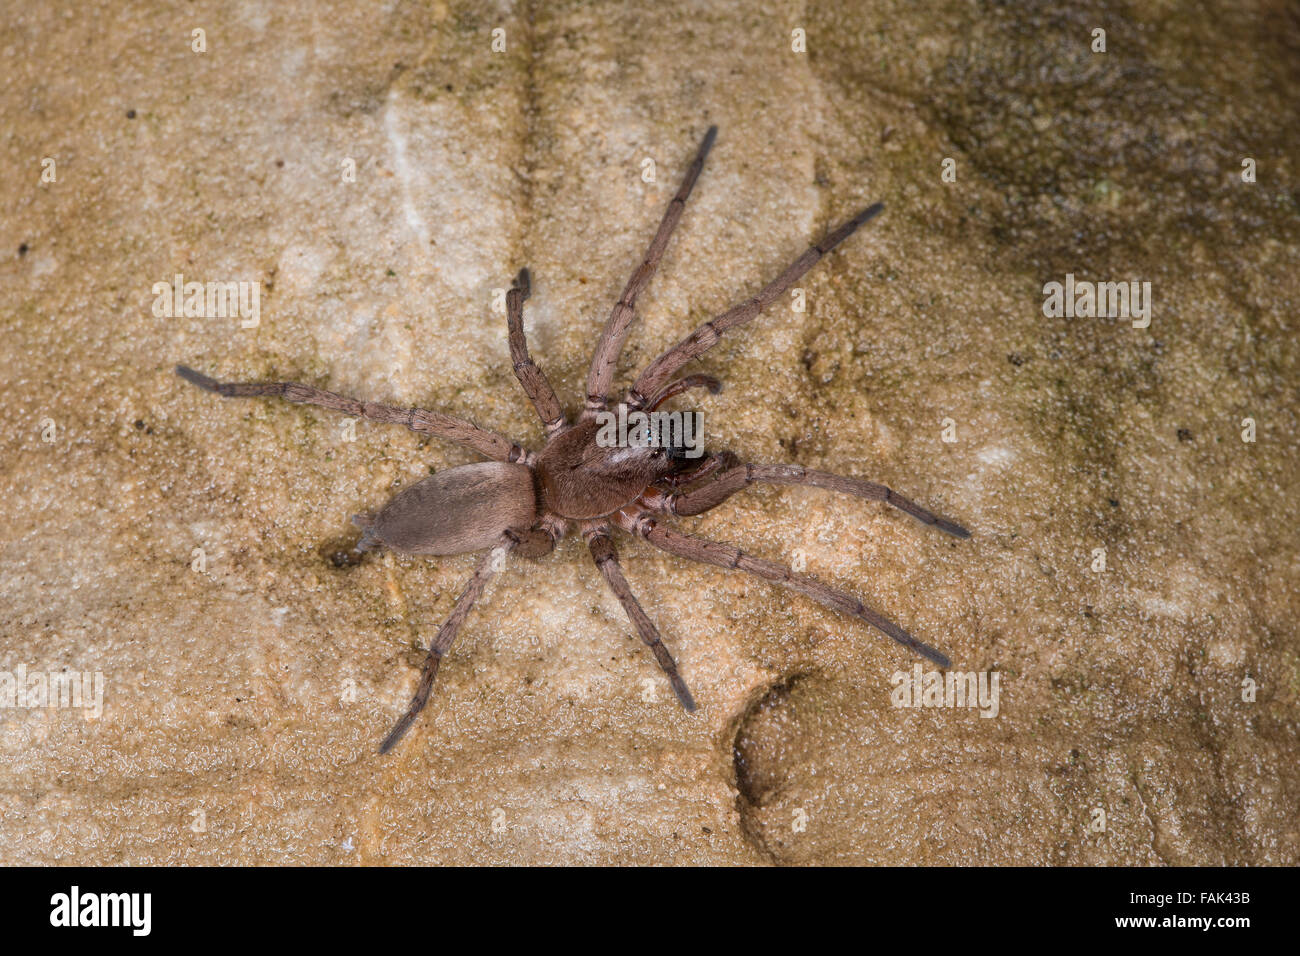 Ground spider, Hunting spider, Plattbauchspinne, Plattbauch-Spinne, Glattbauchspinne, Drassodes sp., Gnaphosidae Stock Photo